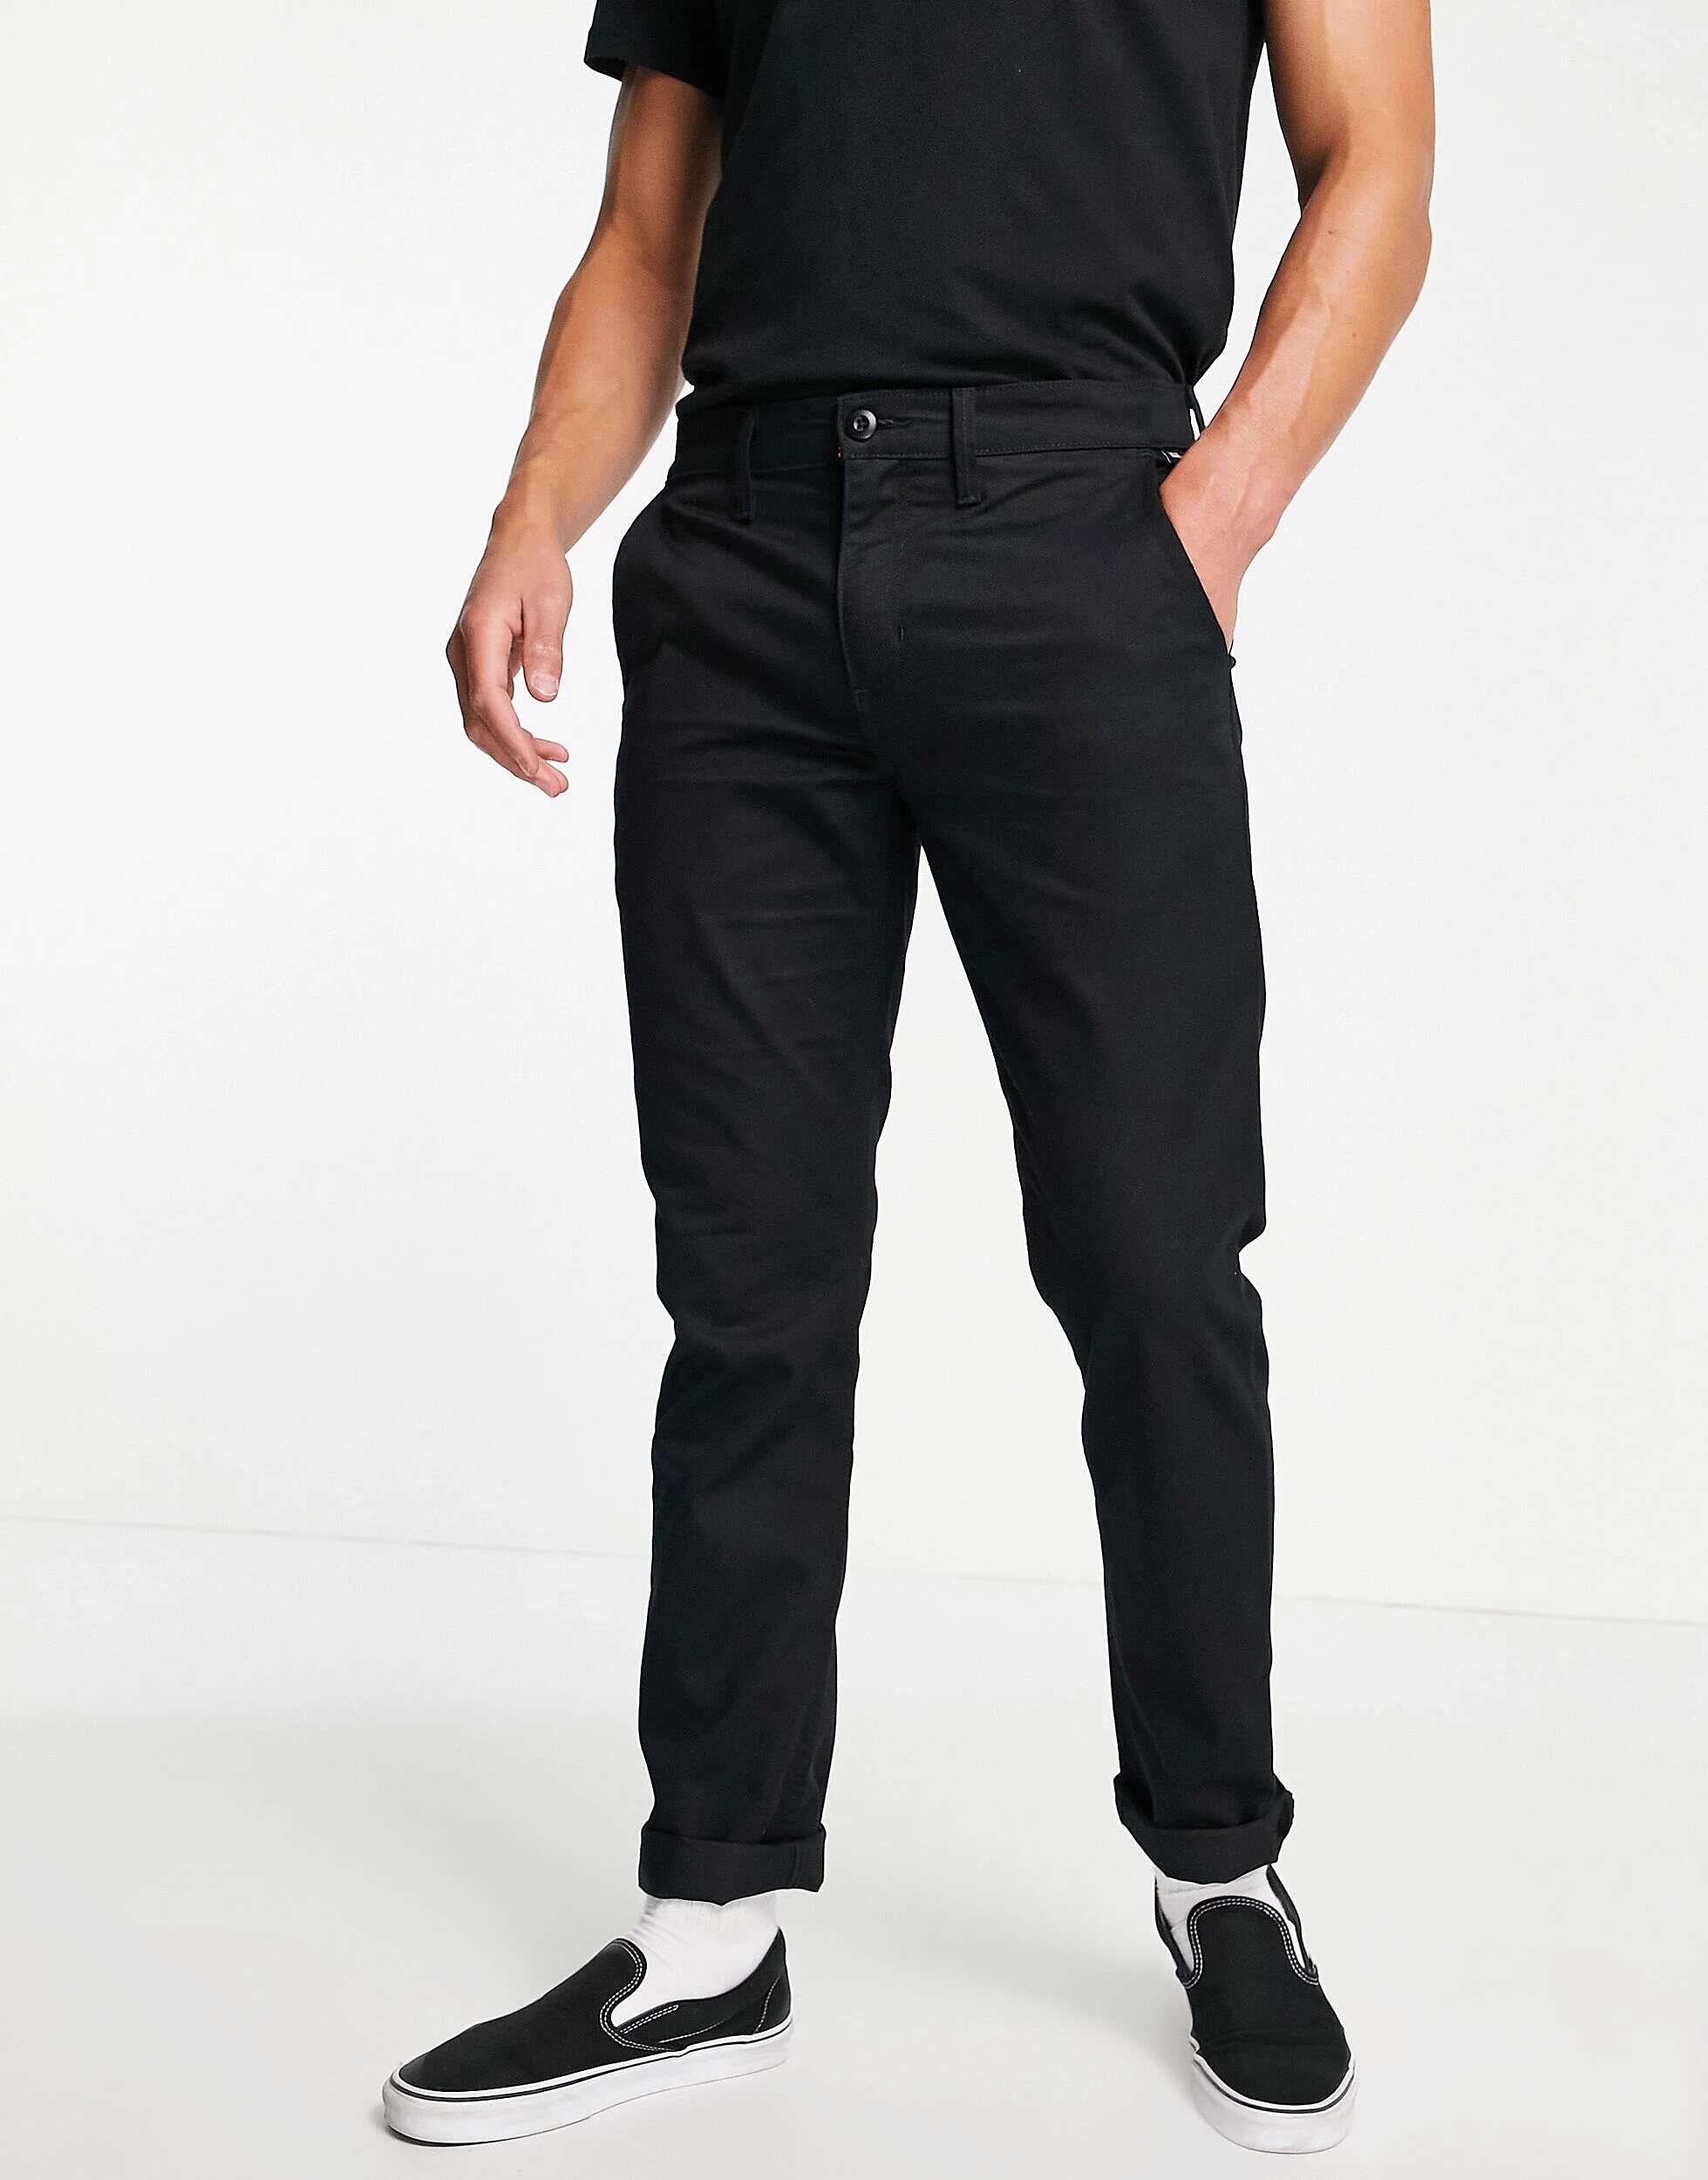 Черные брюки-чиносы узкого кроя Vans Authentic школьные брюки чинос oshkosh повседневный стиль карманы размер 6 синий